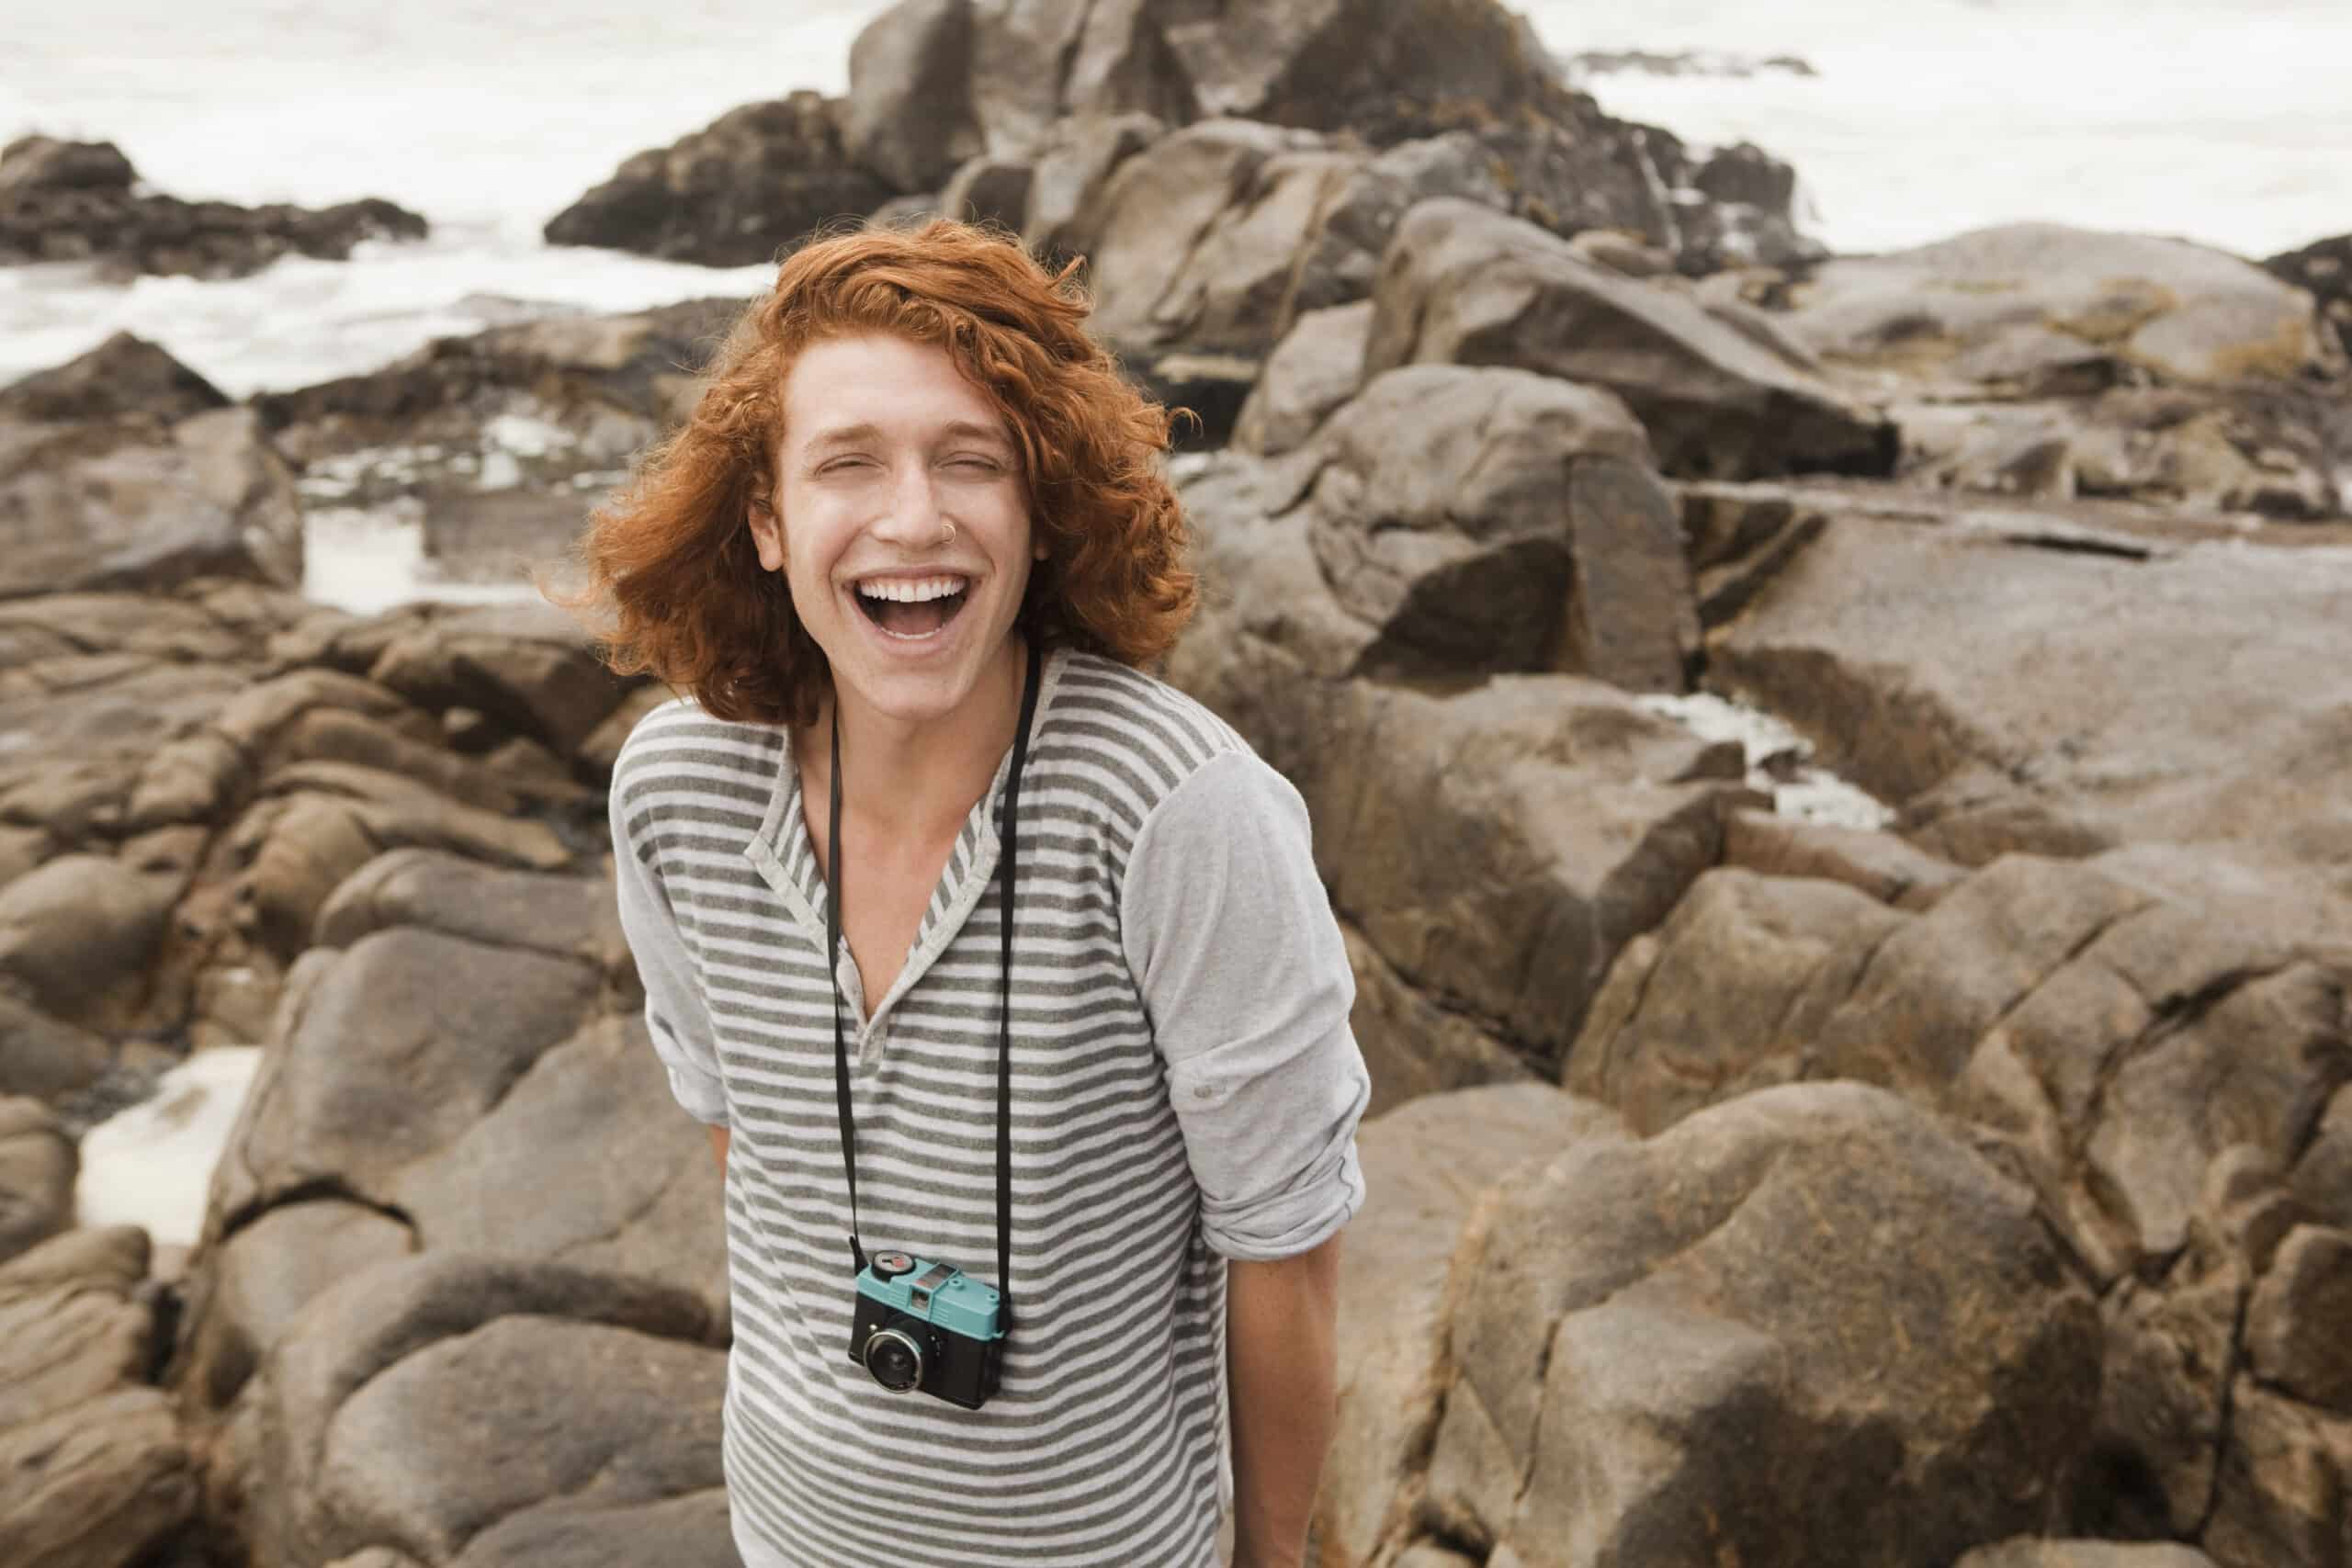 Ein fröhlicher junger Mensch mit lockigem roten Haar und einer Kamera um den Hals lacht herzlich an einem steinigen Strand mit Meereswellen im Hintergrund. © Fotografie Tomas Rodriguez